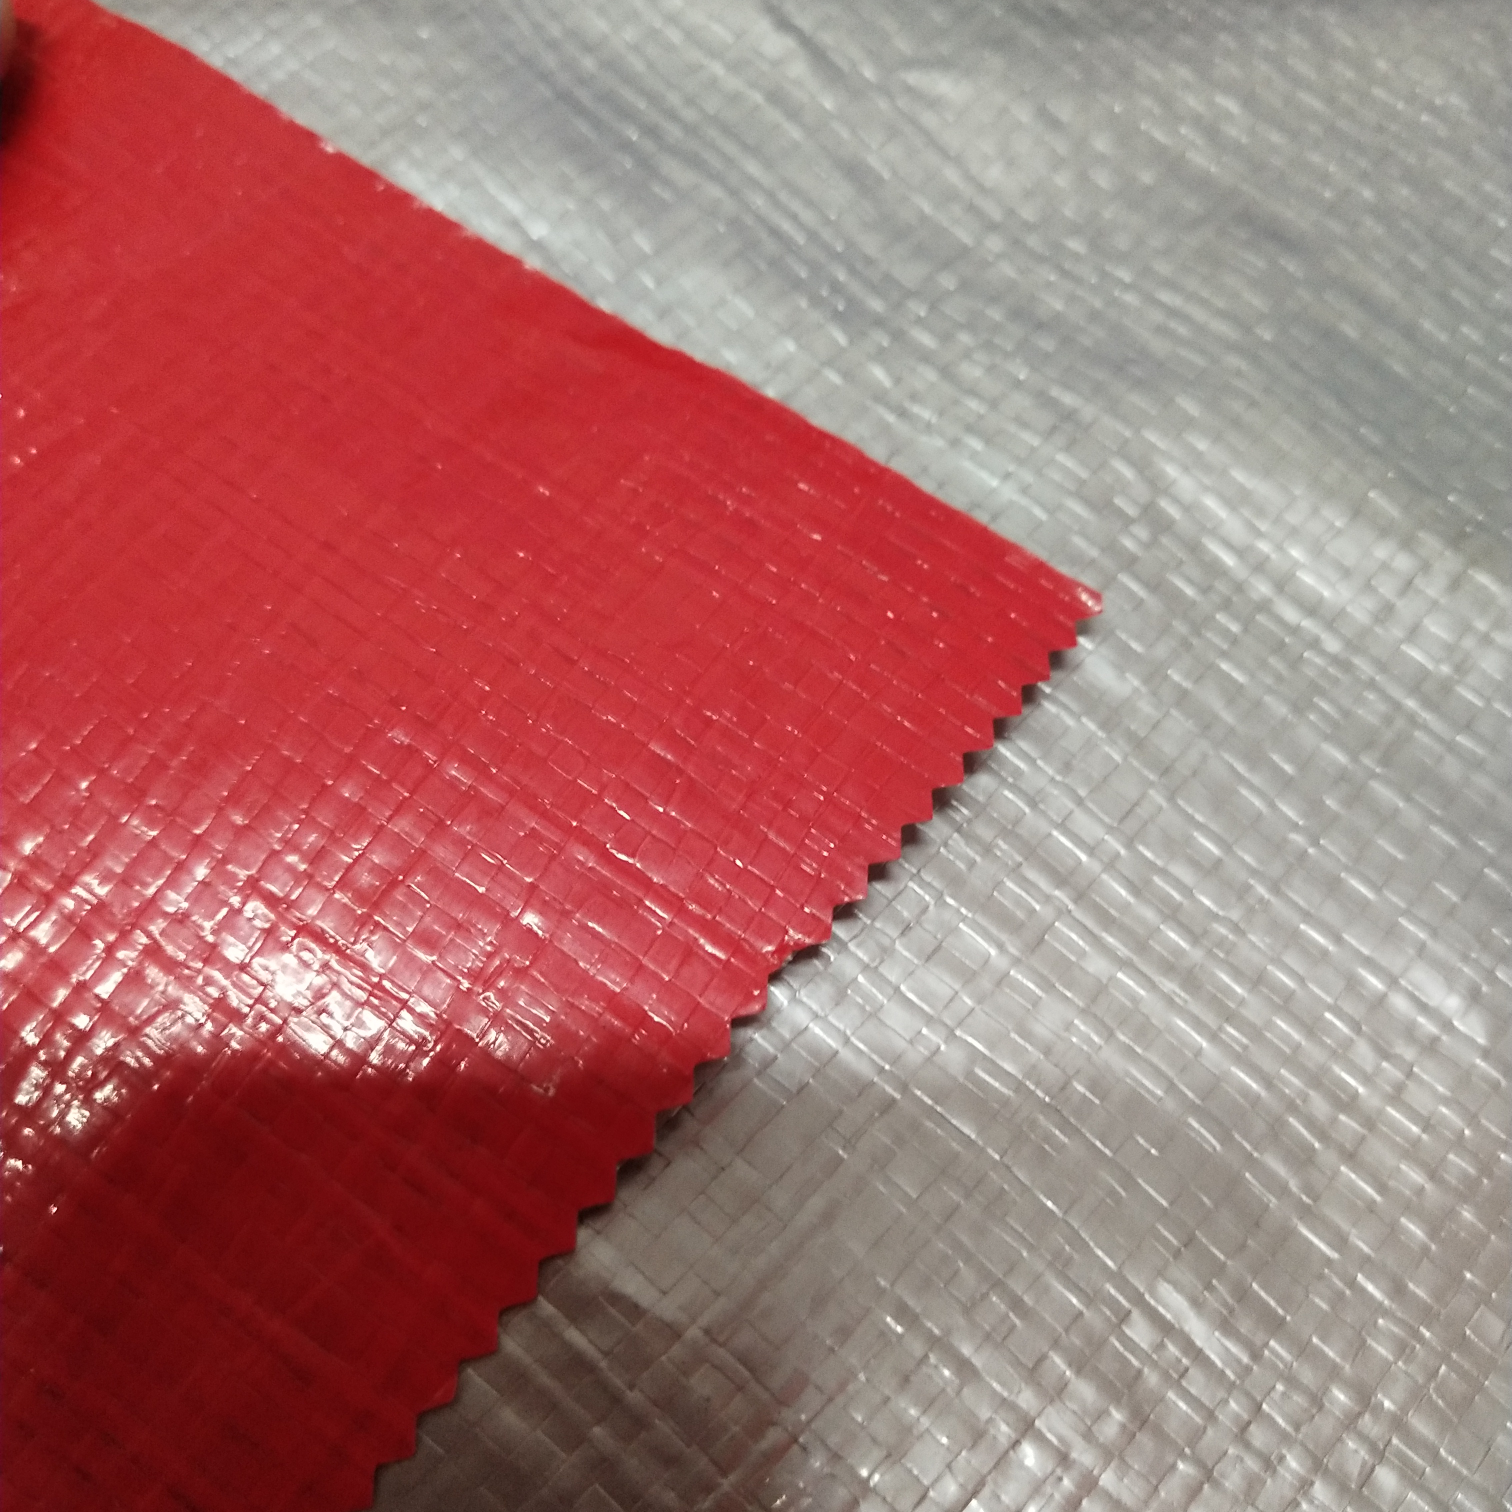 双面淋膜210克银红色PE防水布  塑料编织布  适用于花房篷布 汽车篷布 帐篷底布 各种手提袋  收纳箱专用面料